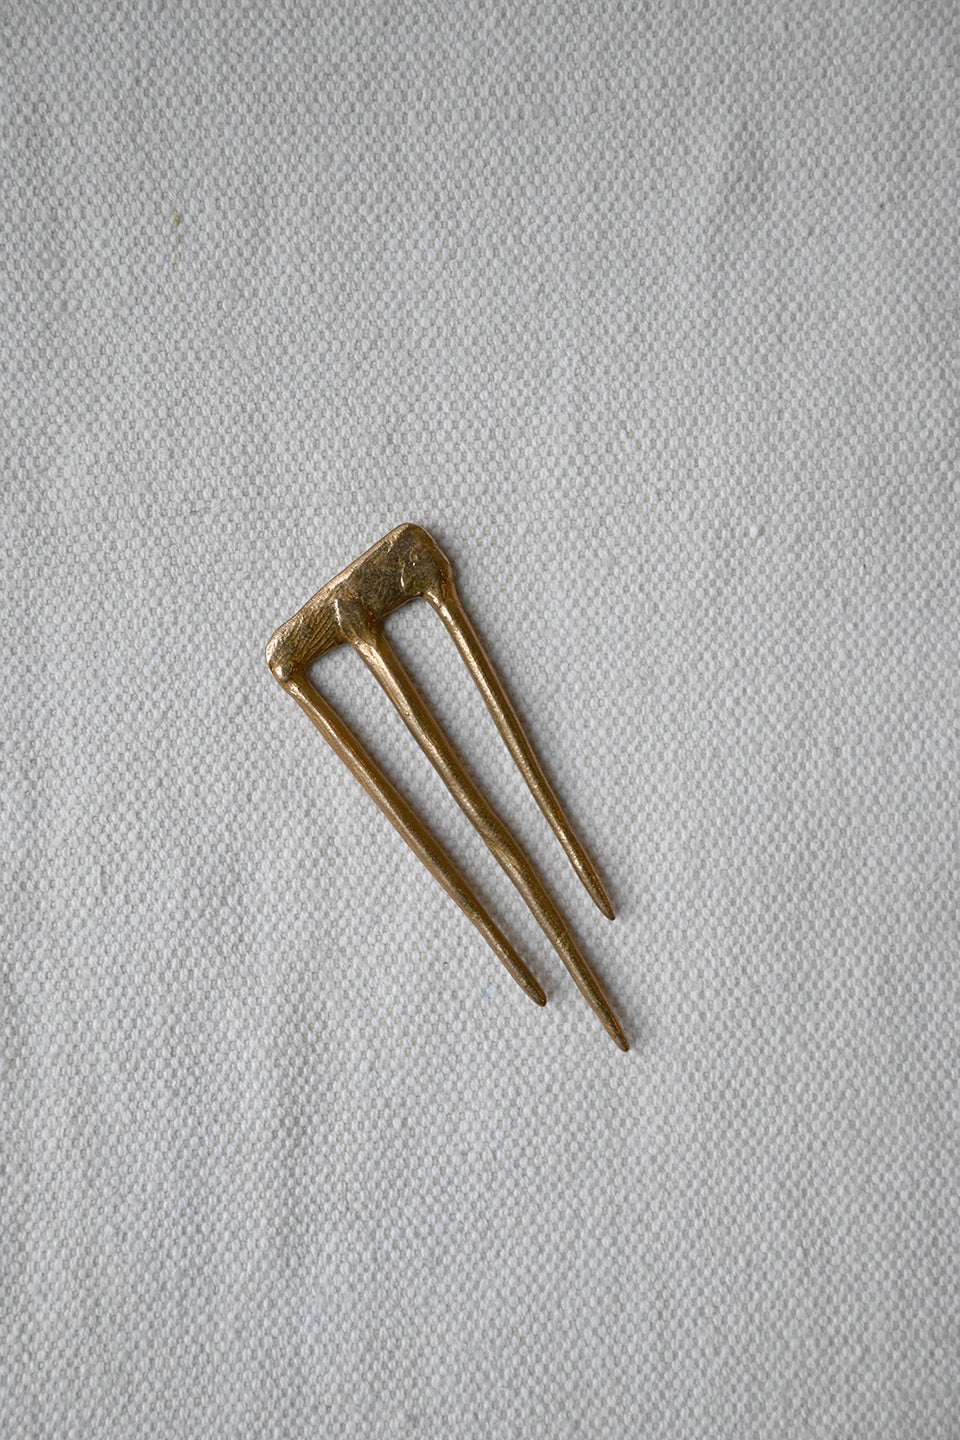 Bronze Hair Pins